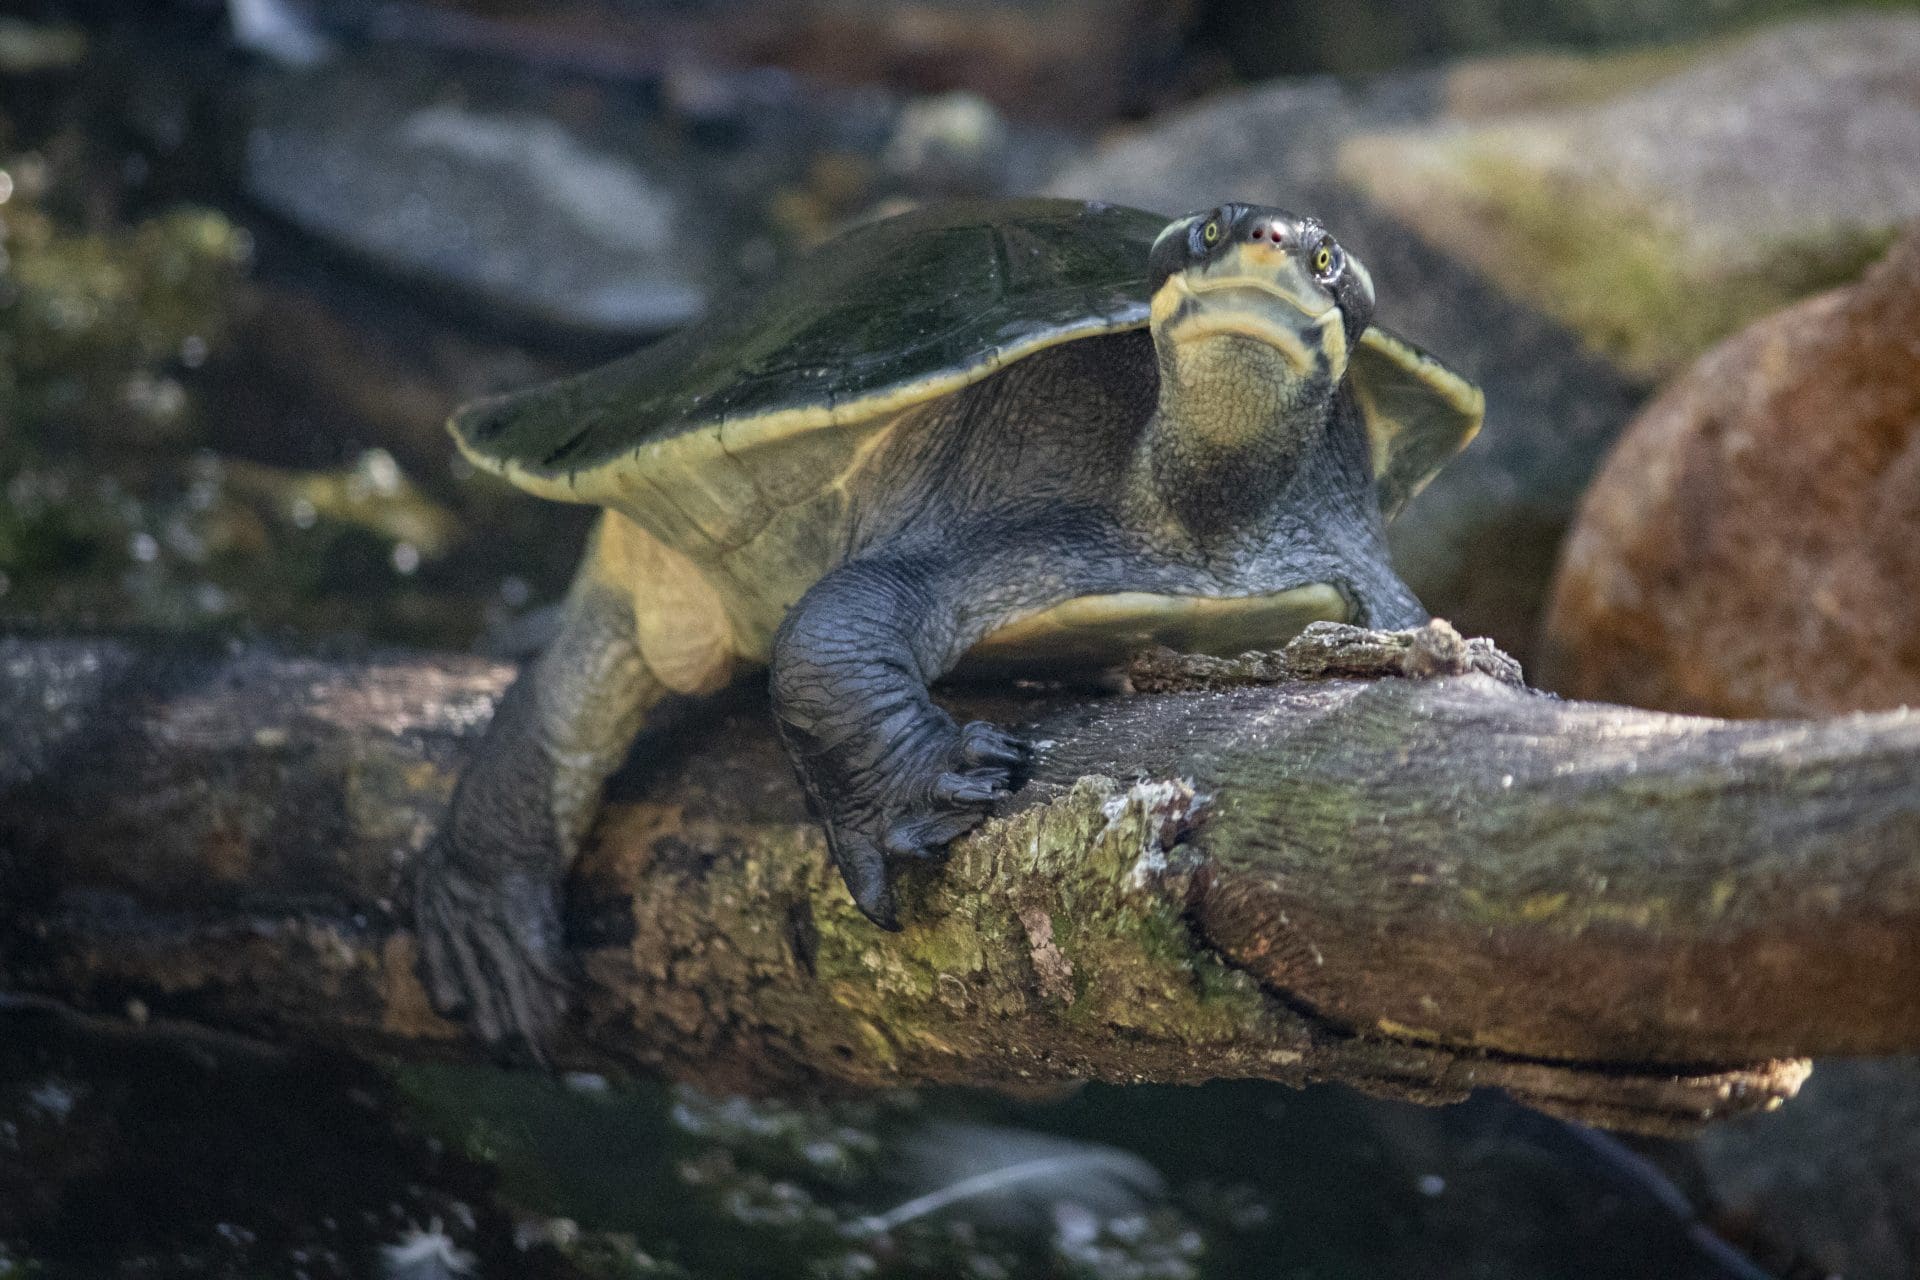 Krefft's River Turtle